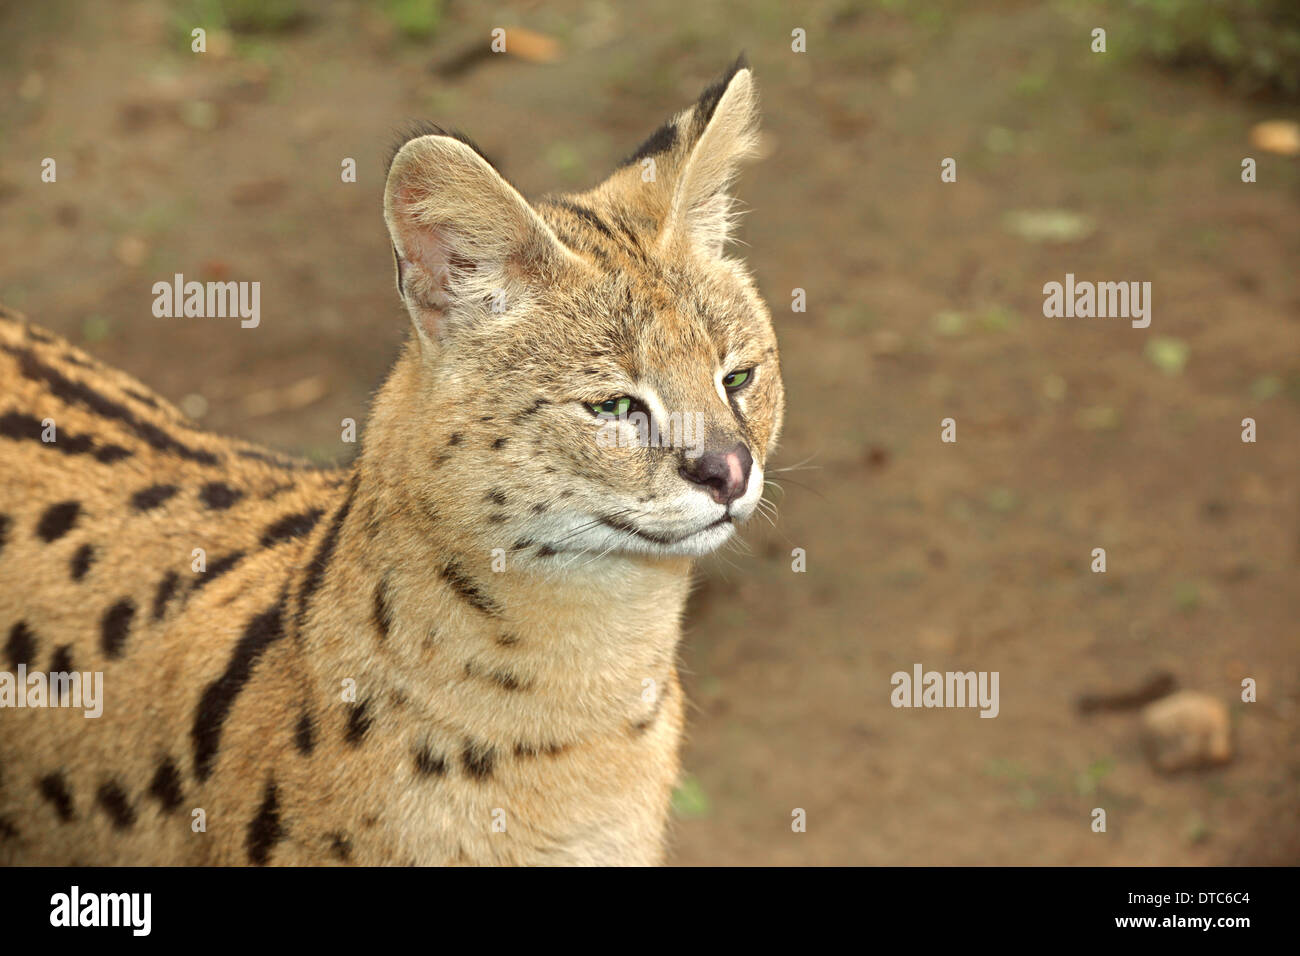 Serval cat (Leptailurus serval) closeup Stock Photo